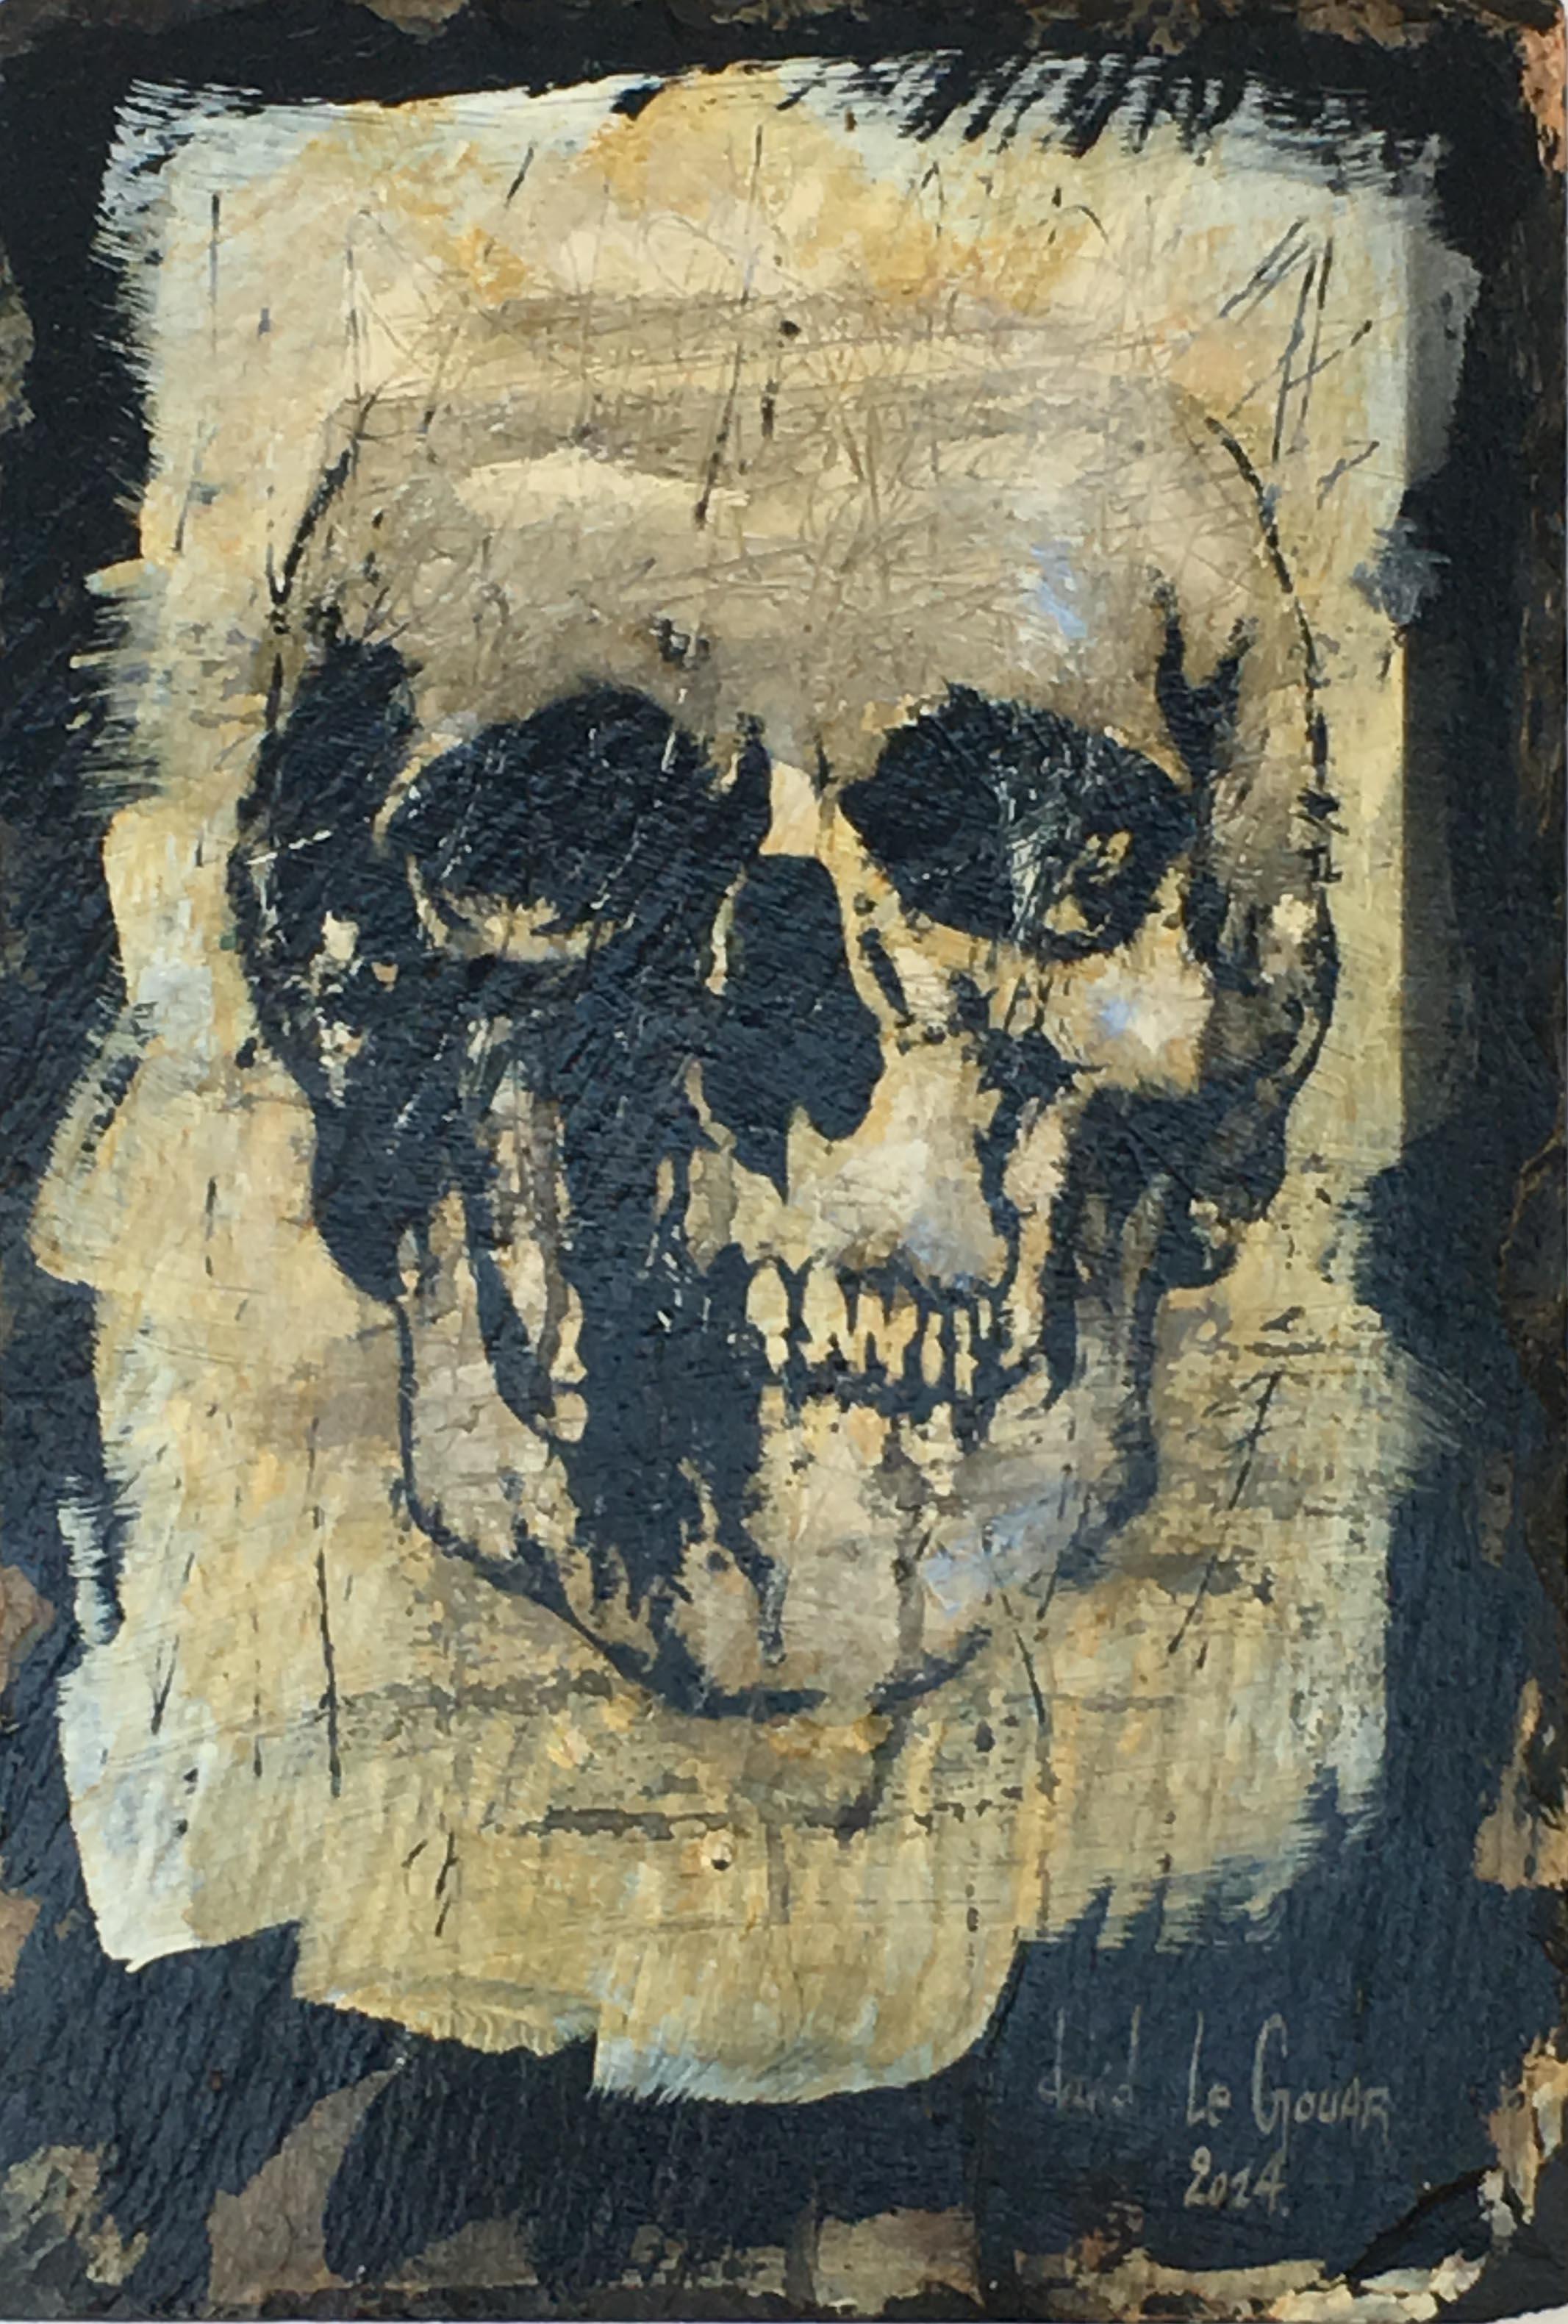 David Le Gouar Portrait Painting - Skull